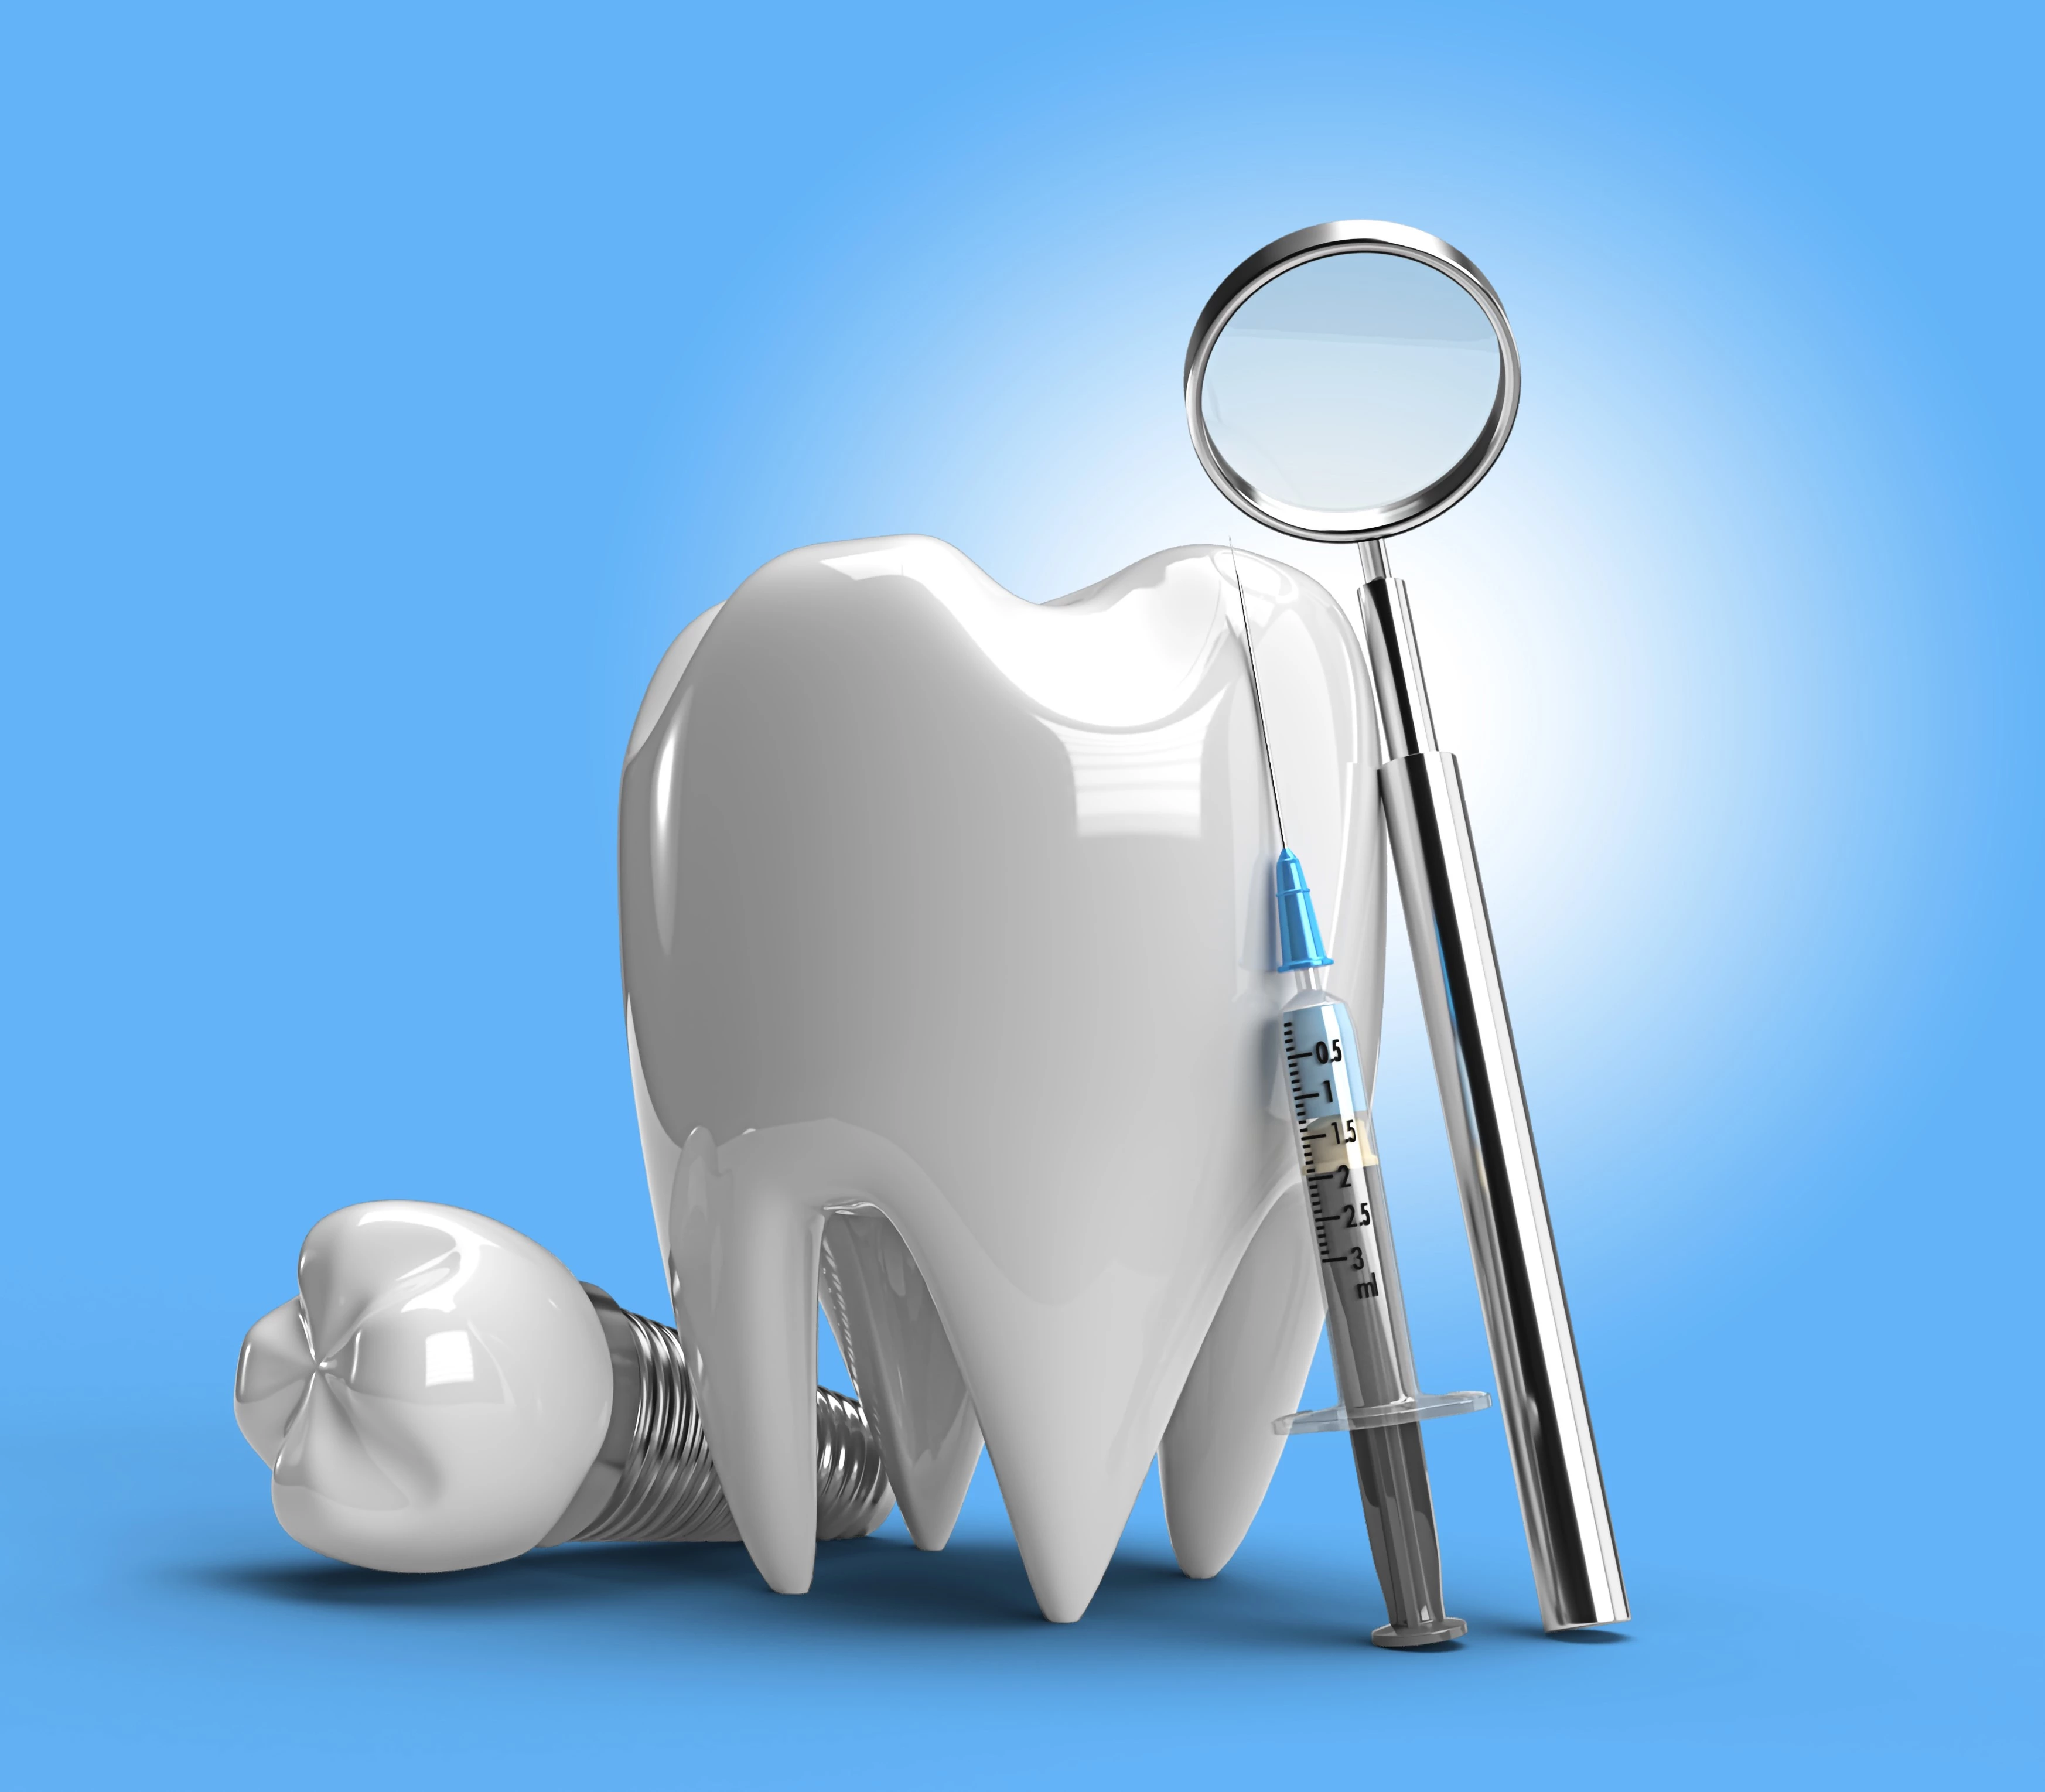 Dental implants image